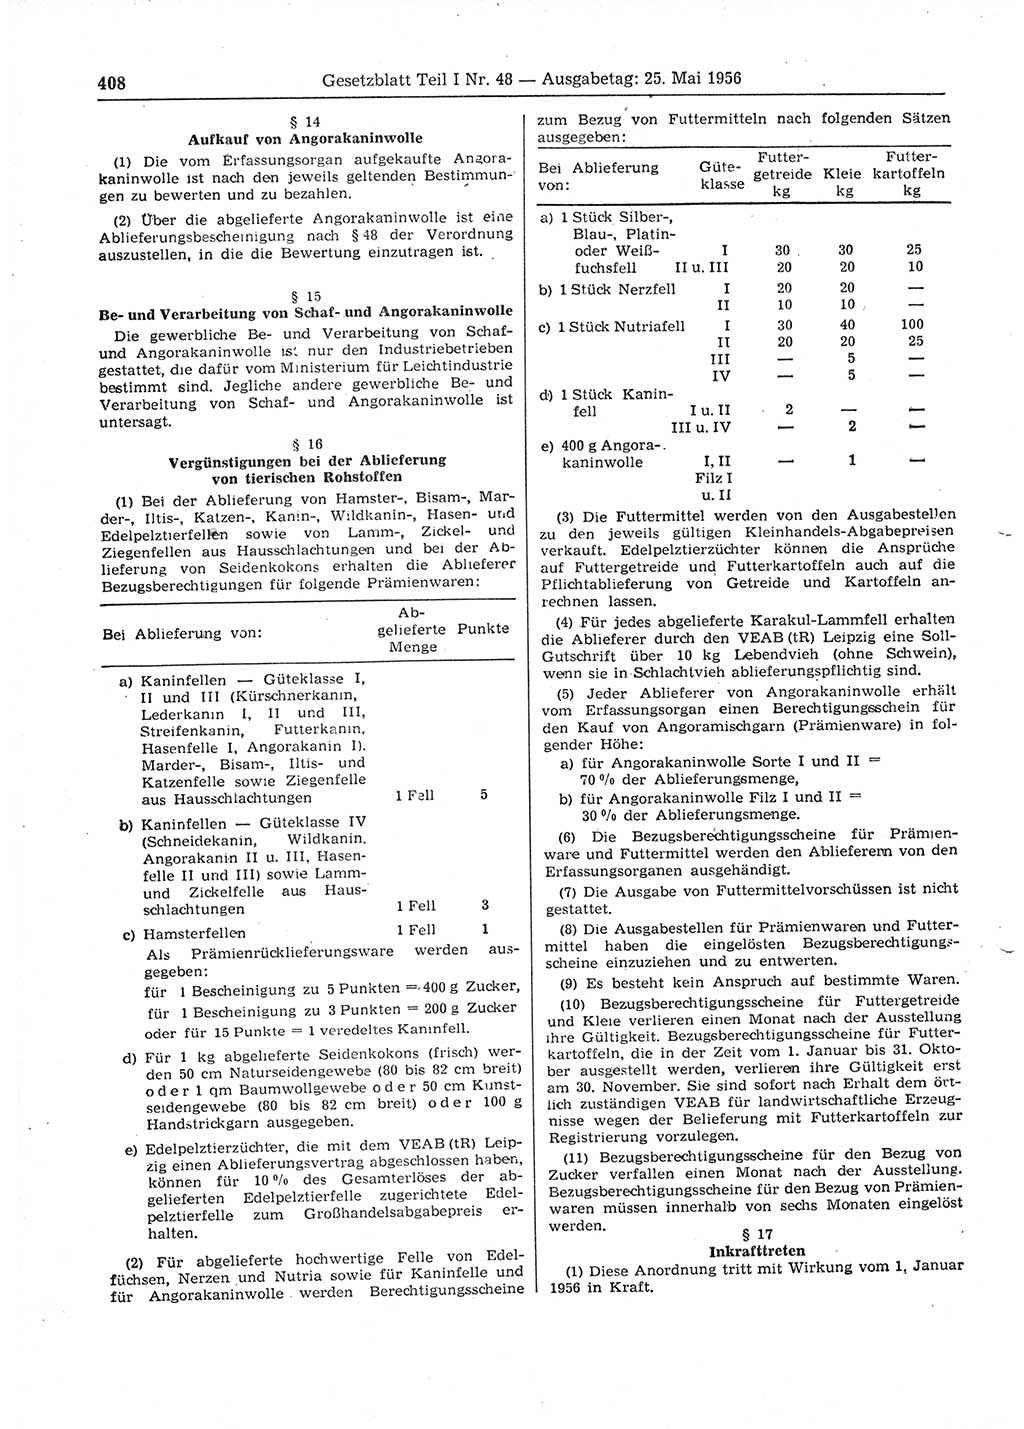 Gesetzblatt (GBl.) der Deutschen Demokratischen Republik (DDR) Teil Ⅰ 1956, Seite 408 (GBl. DDR Ⅰ 1956, S. 408)